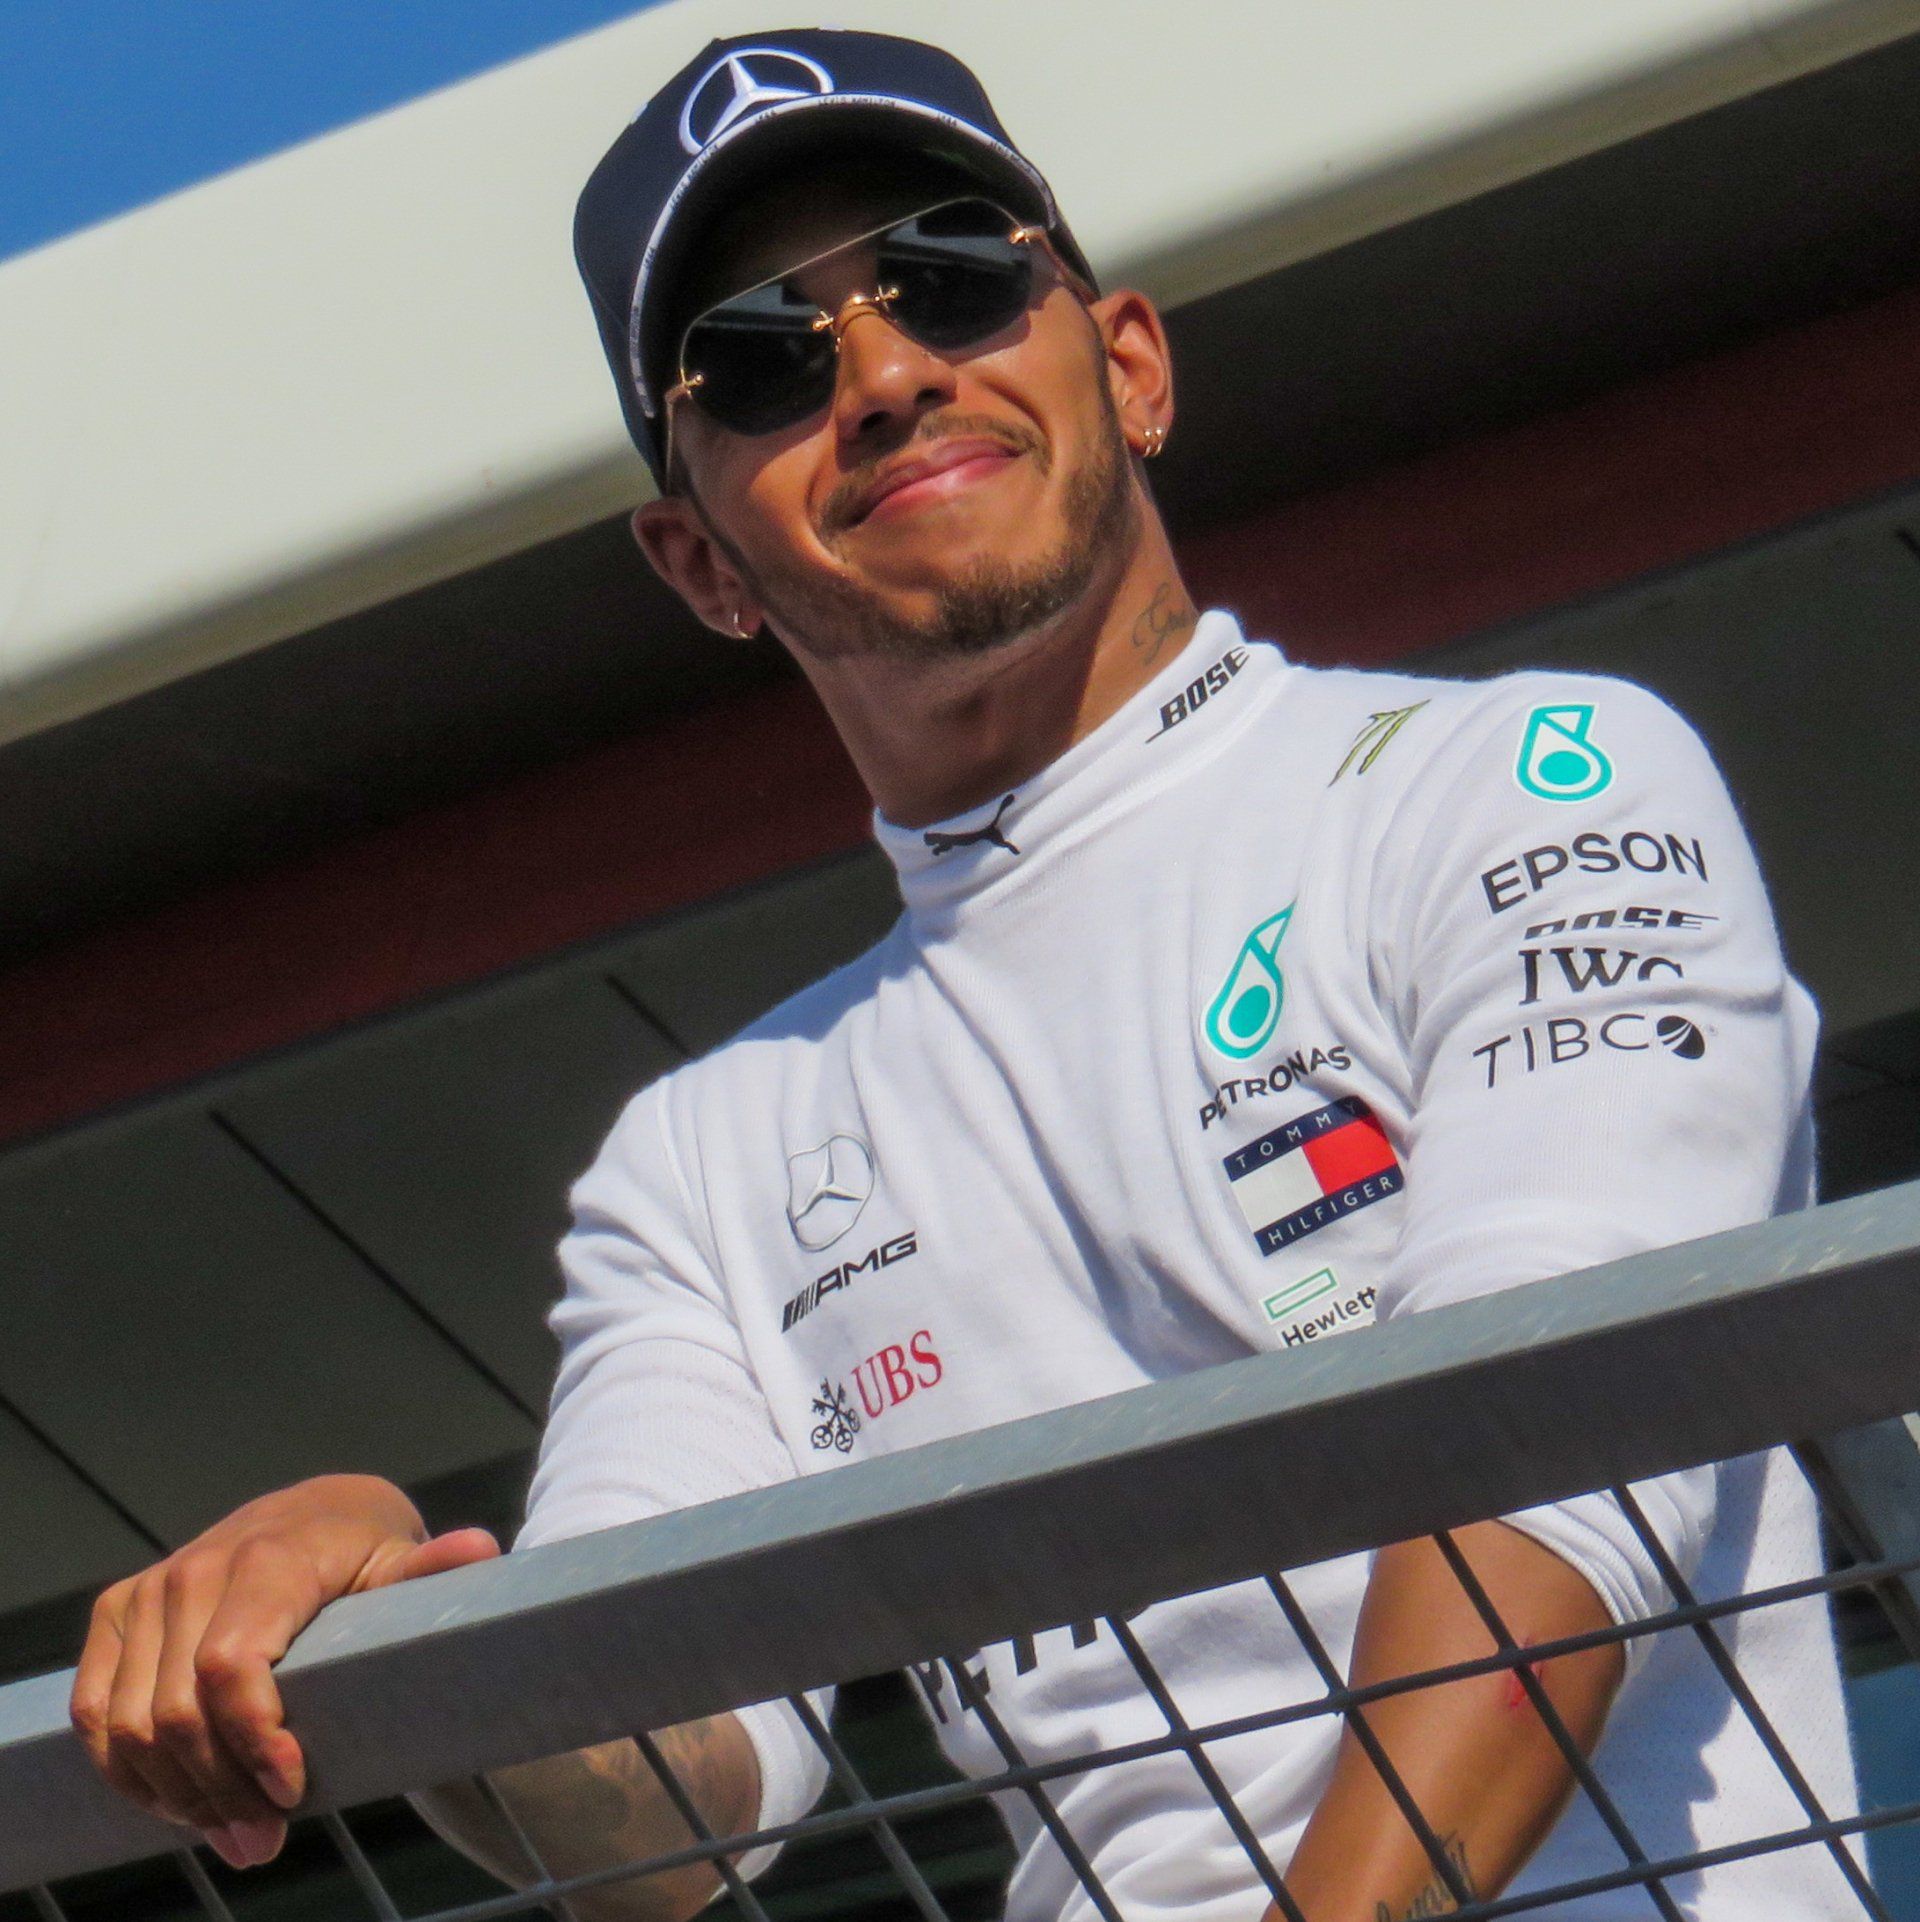 Lewis Hamilton at Silverstone 2018